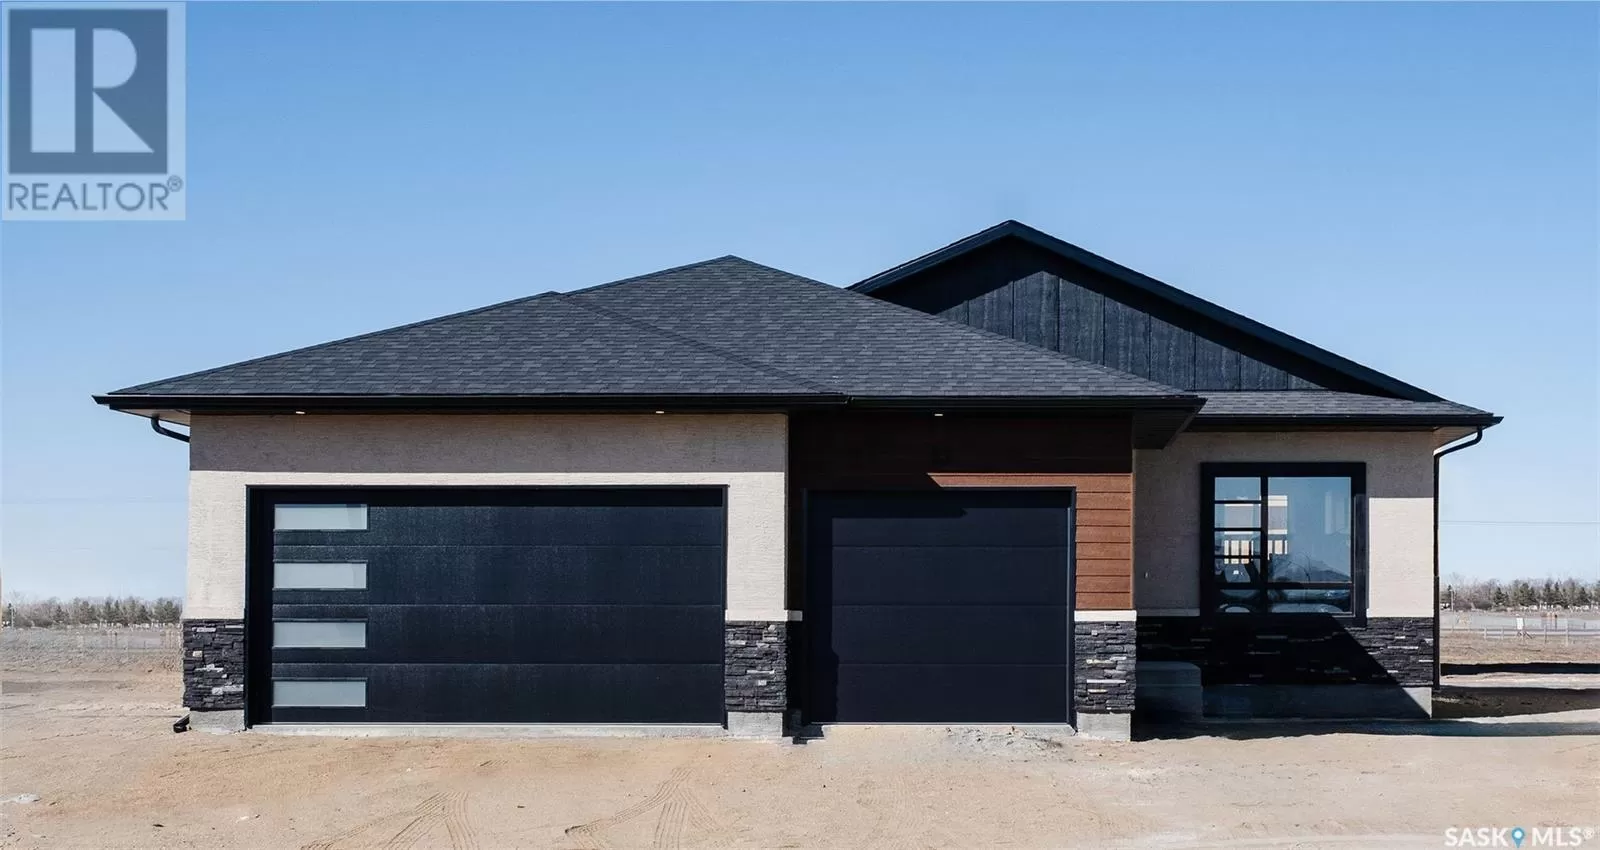 House for rent: 10 Plains Green, Pilot Butte, Saskatchewan S0G 3Z0